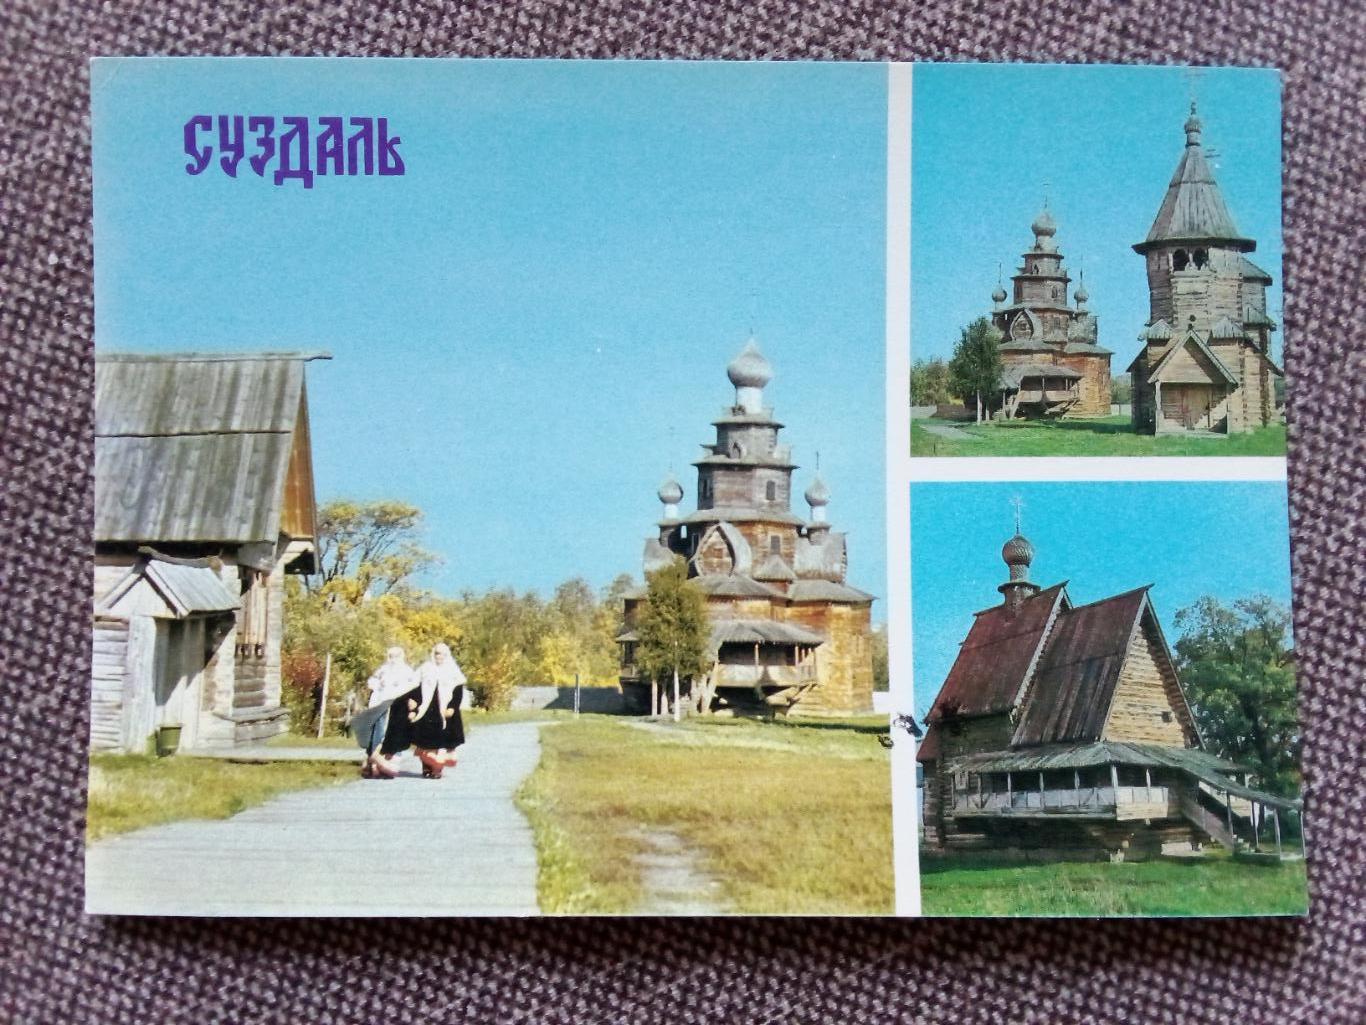 Города СССР : Суздаль - Музей деревянного творчества (Коллаж) 1982 г. (почтовая